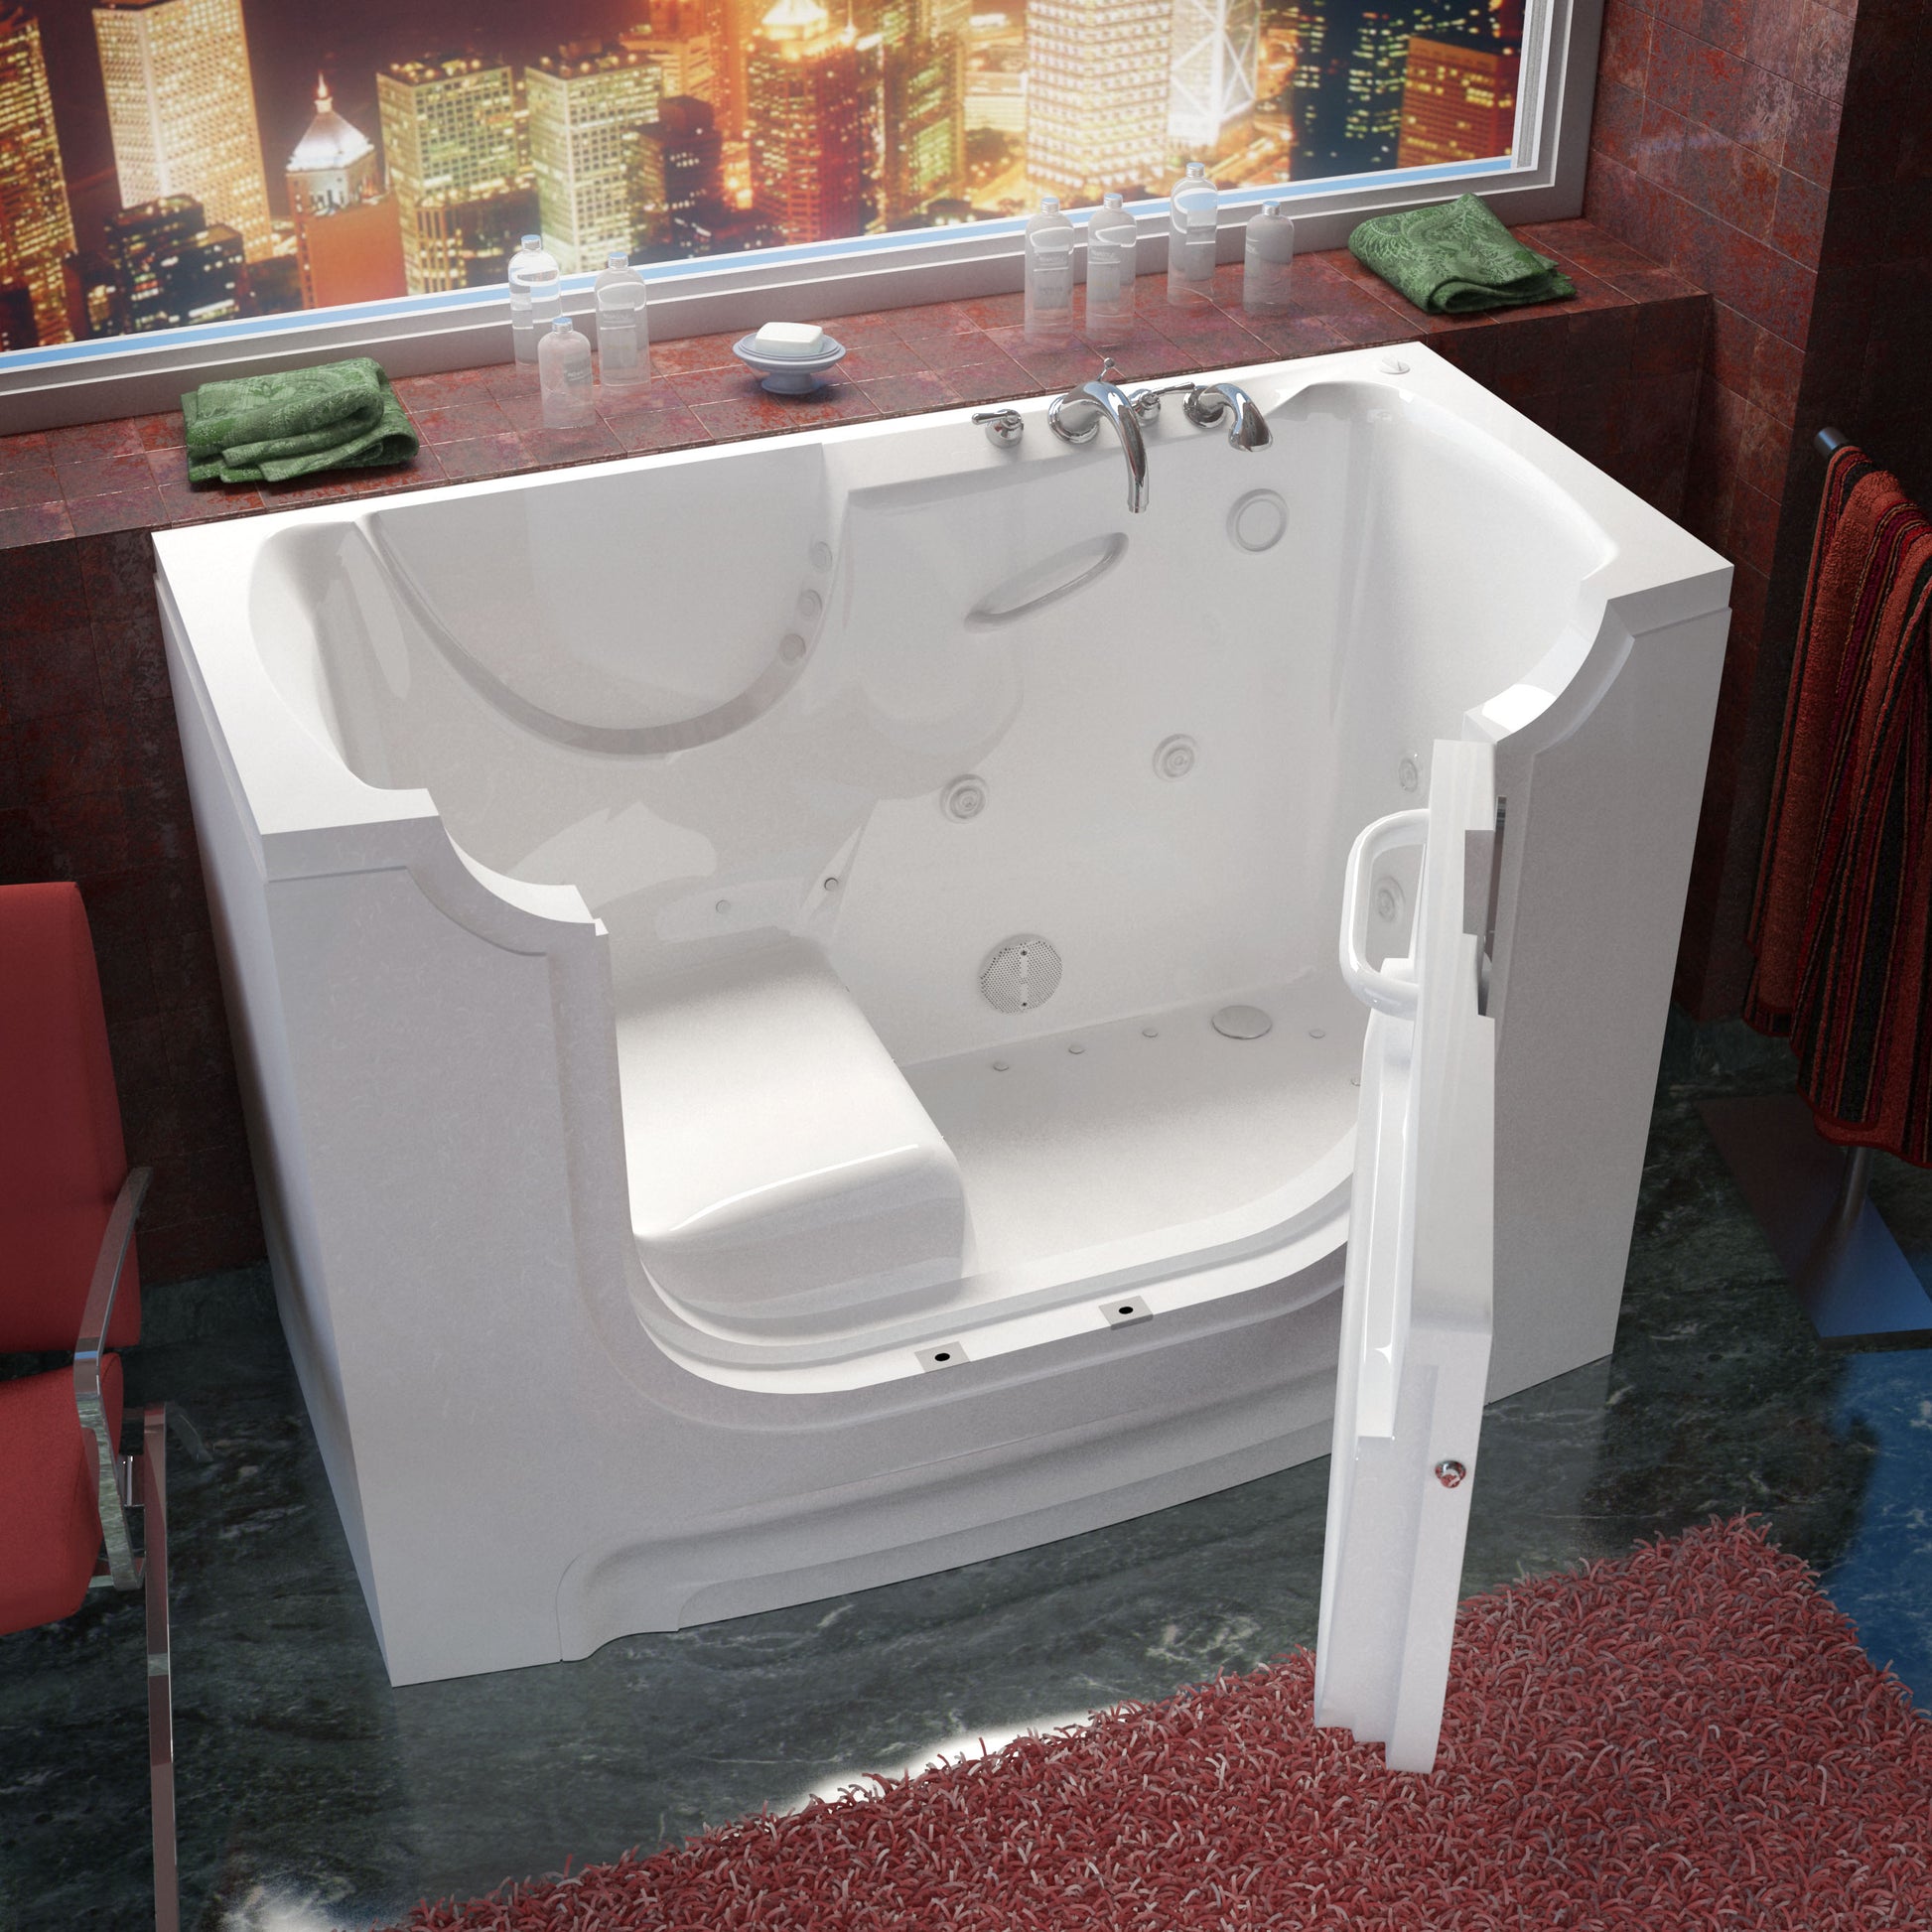 MediTub 30 x 60 Wheelchair Accessible Bathtub - The Tubfair